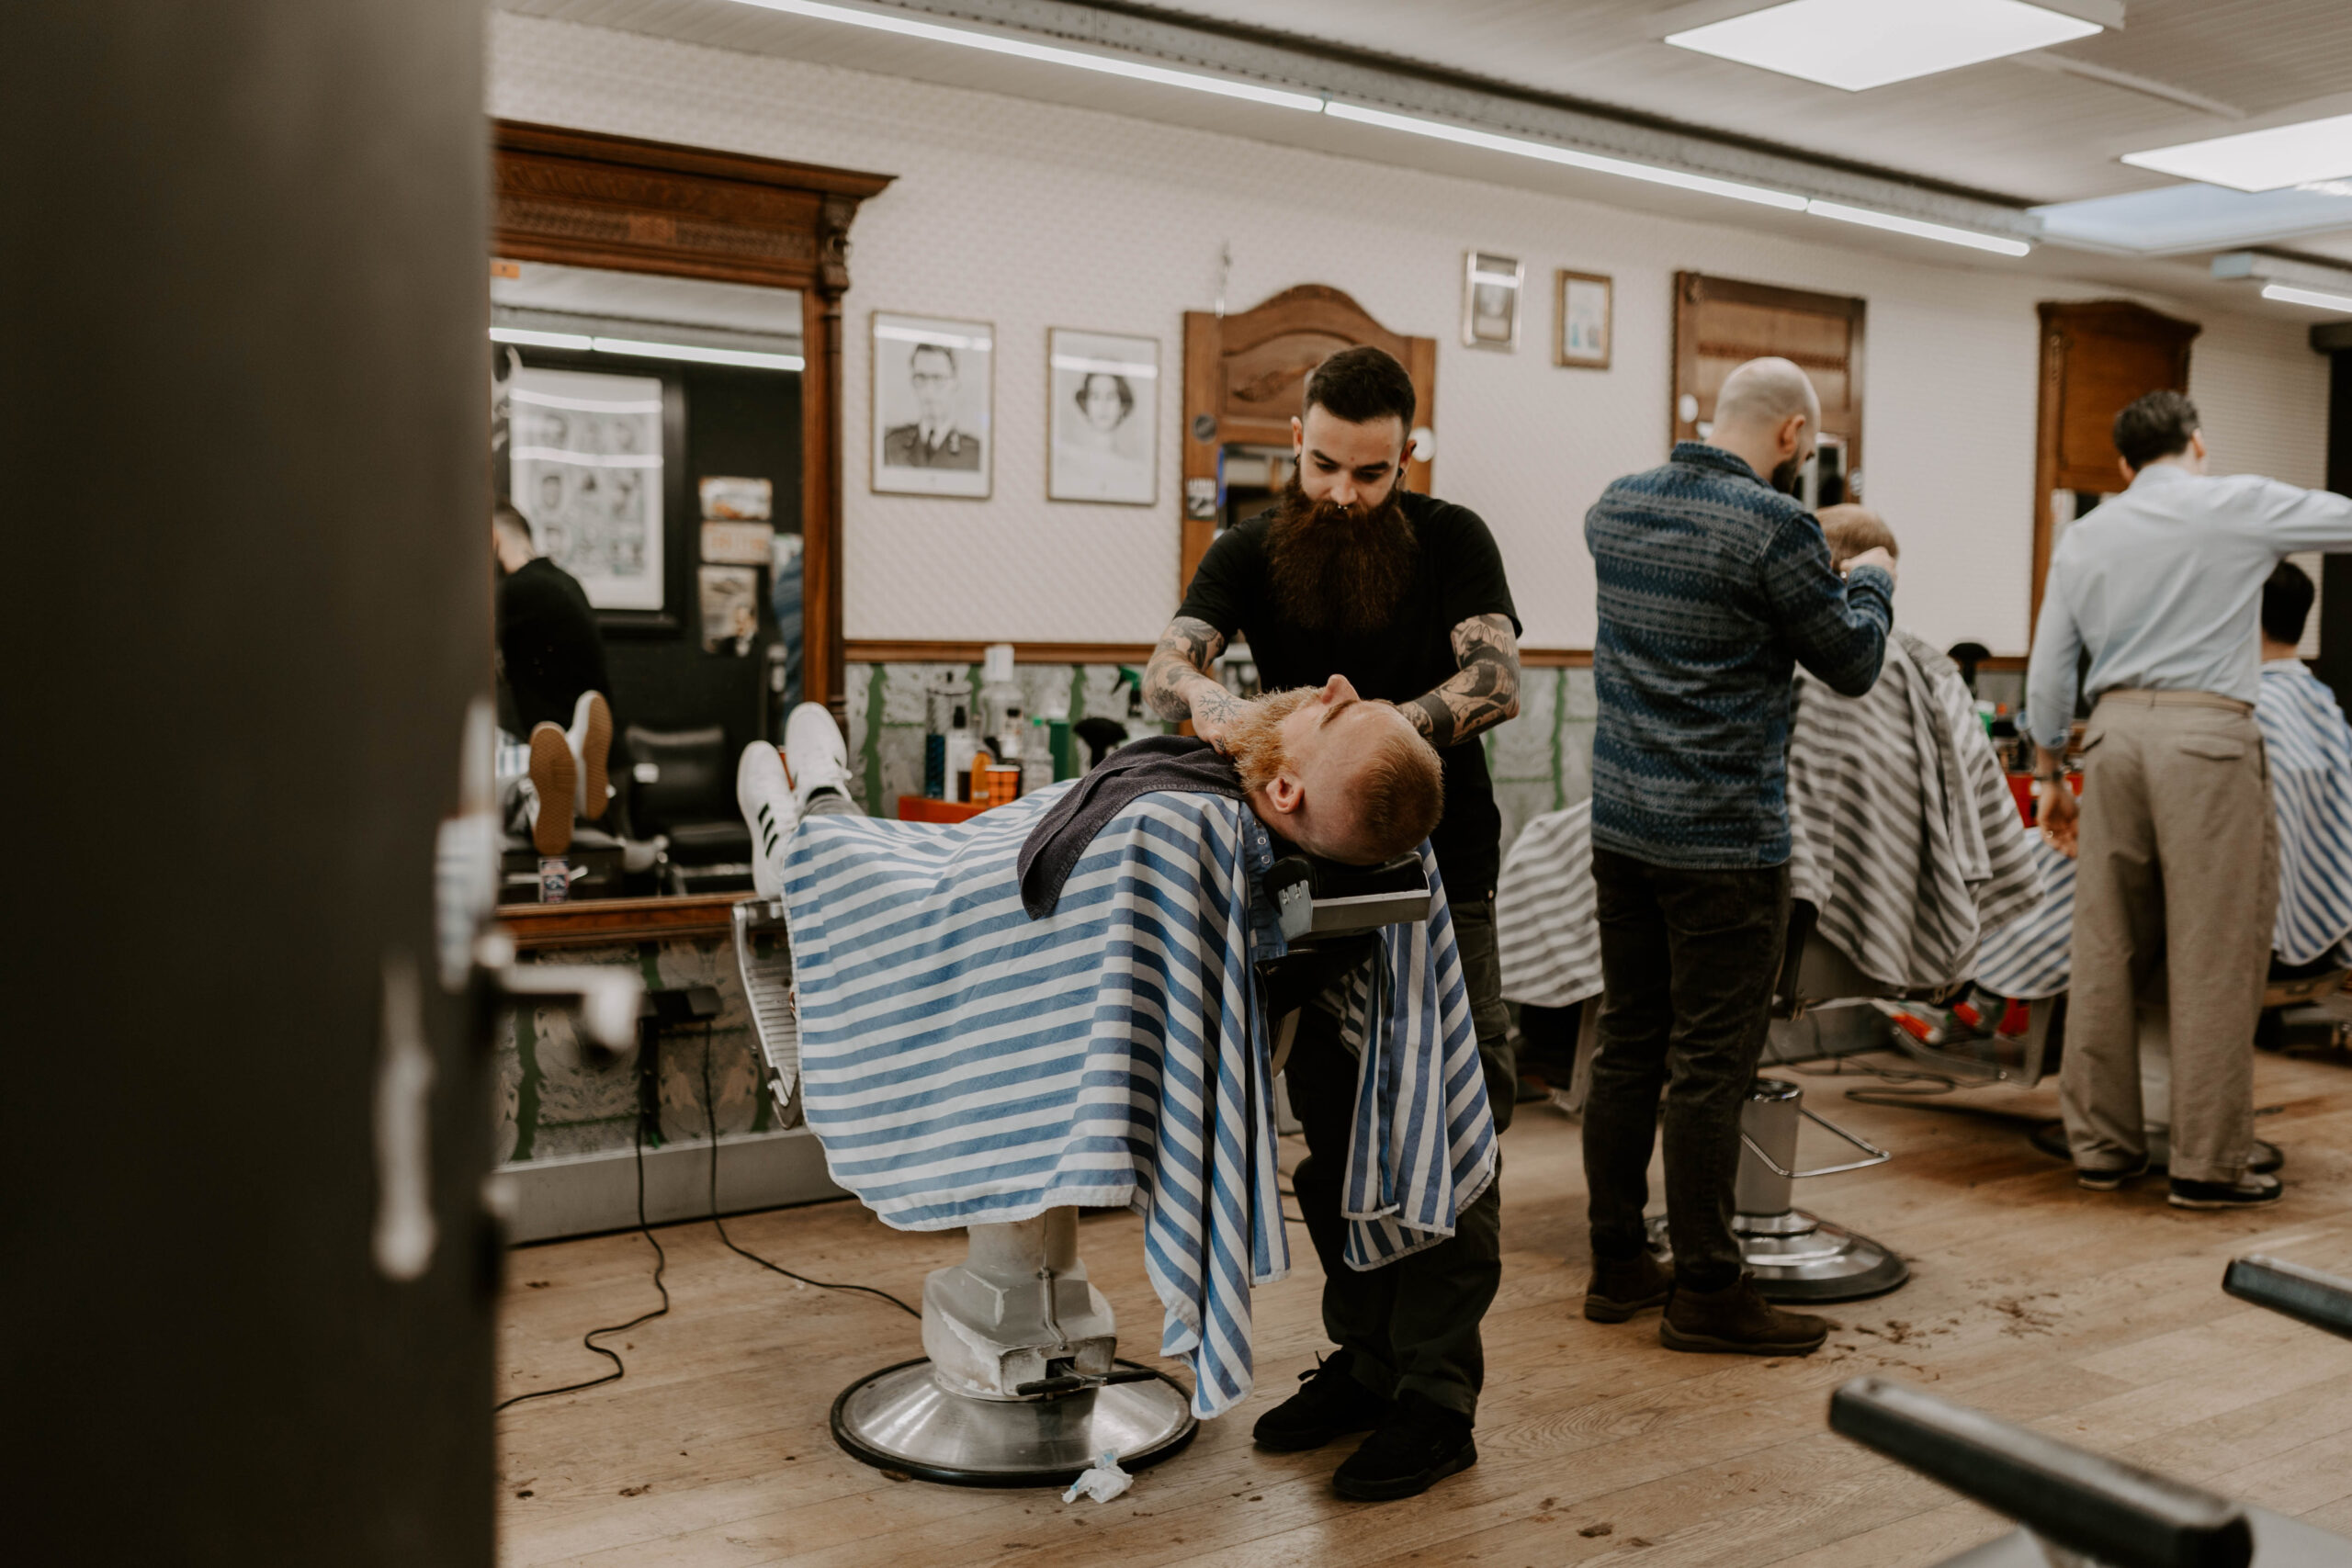 barbiers aan het werk. een open deur toont de binnenkant van een barbershop, waar 3 barbiers aan het werk zijn. Een eerste barbier is aan het scheren, twee andere barbiers zijn aan het knippen. Het ziet er gezellig druk uit. Het is een zeer uitnodigend beeld.